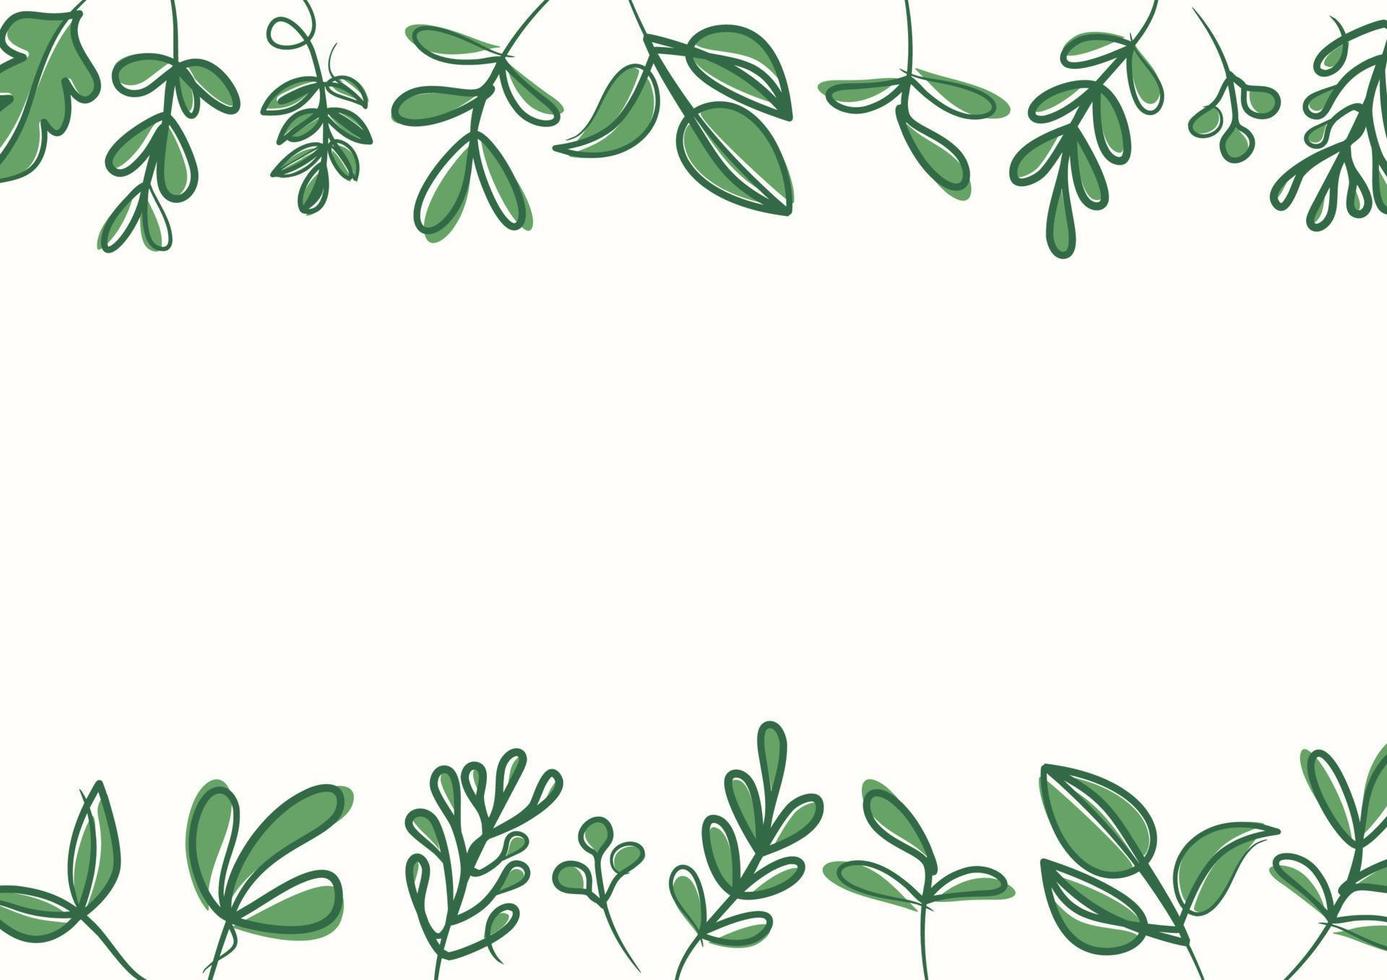 fond de feuilles florales vertes botaniques avec espace de copie pour le texte vecteur